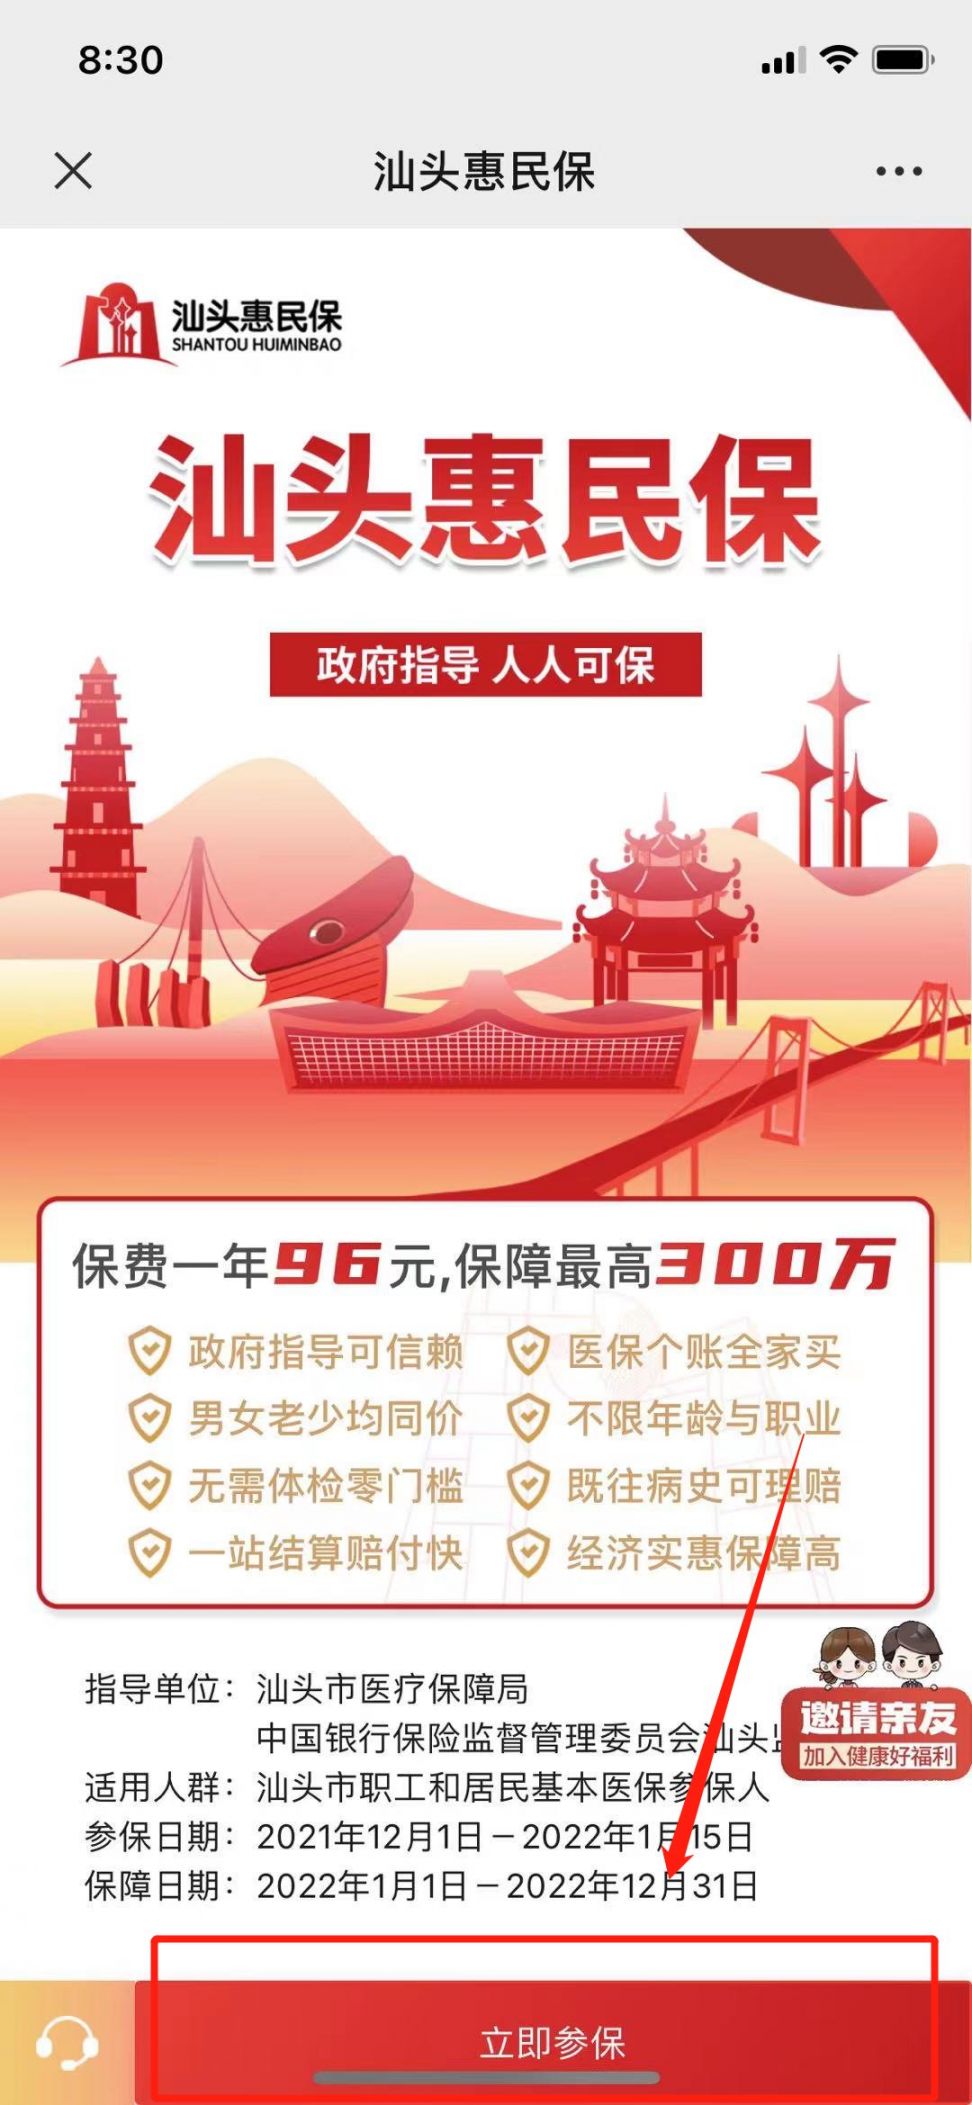 2021汕头惠民保参保指南（入口 流程）